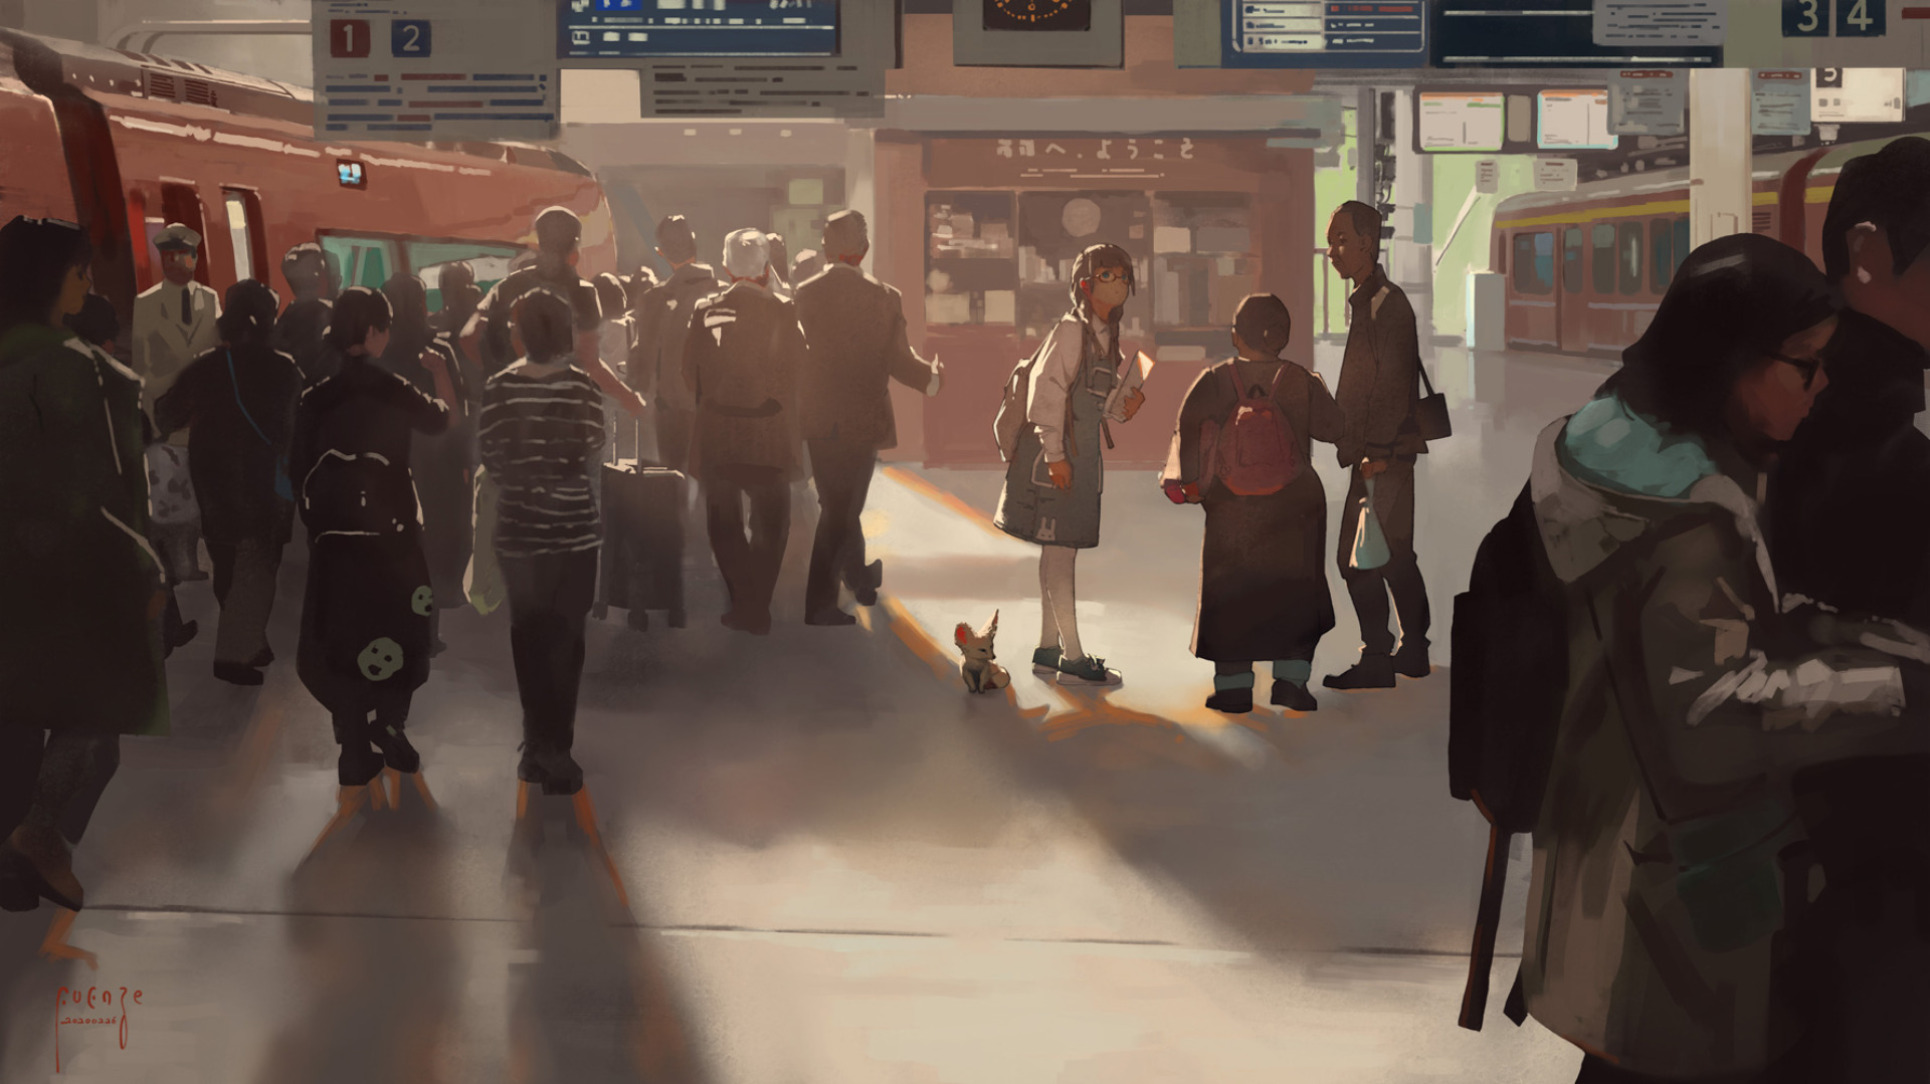 Скачать обои бесплатно Аниме, Люди, Железнодорожная Станция картинка на рабочий стол ПК